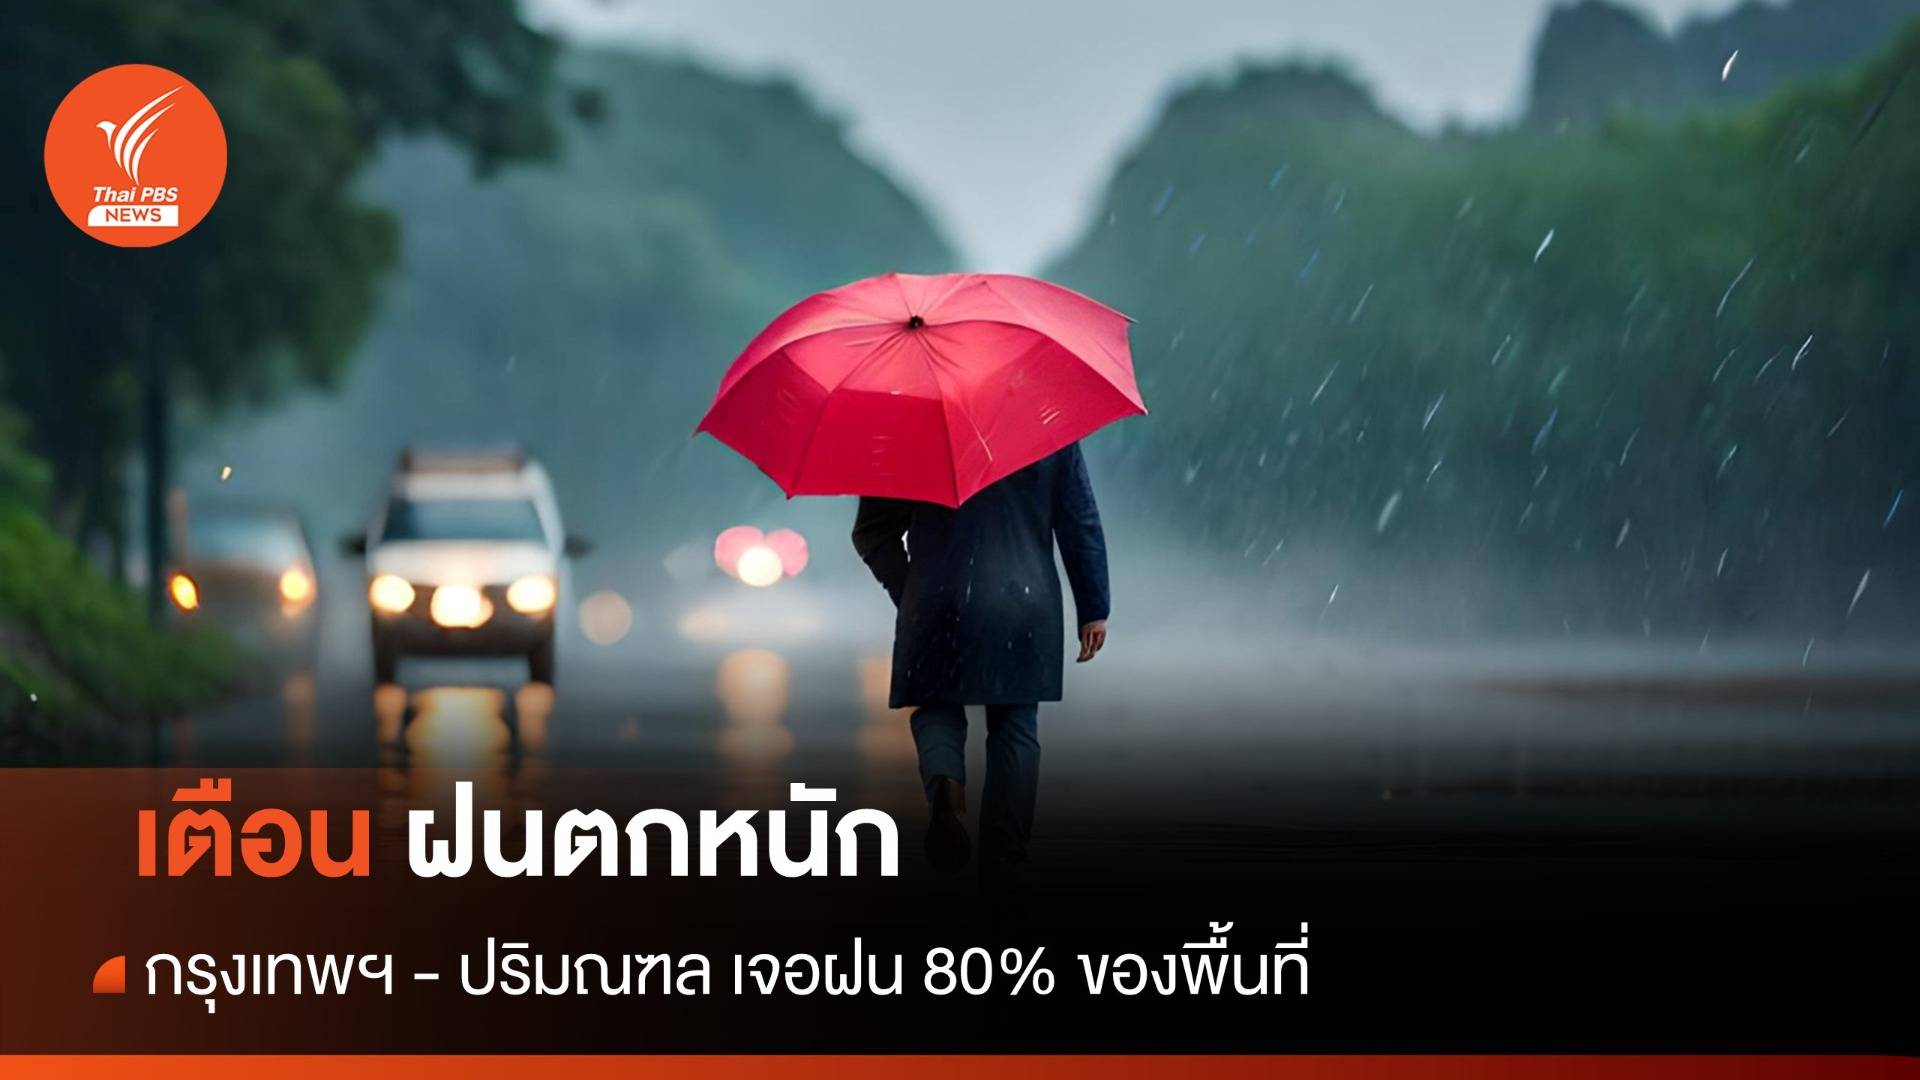 สภาพอากาศวันนี้ เช็กพื้นที่ฝนตกหนัก กรุงเทพฯ - ปริมณฑล ฝน 80% ของพื้นที่